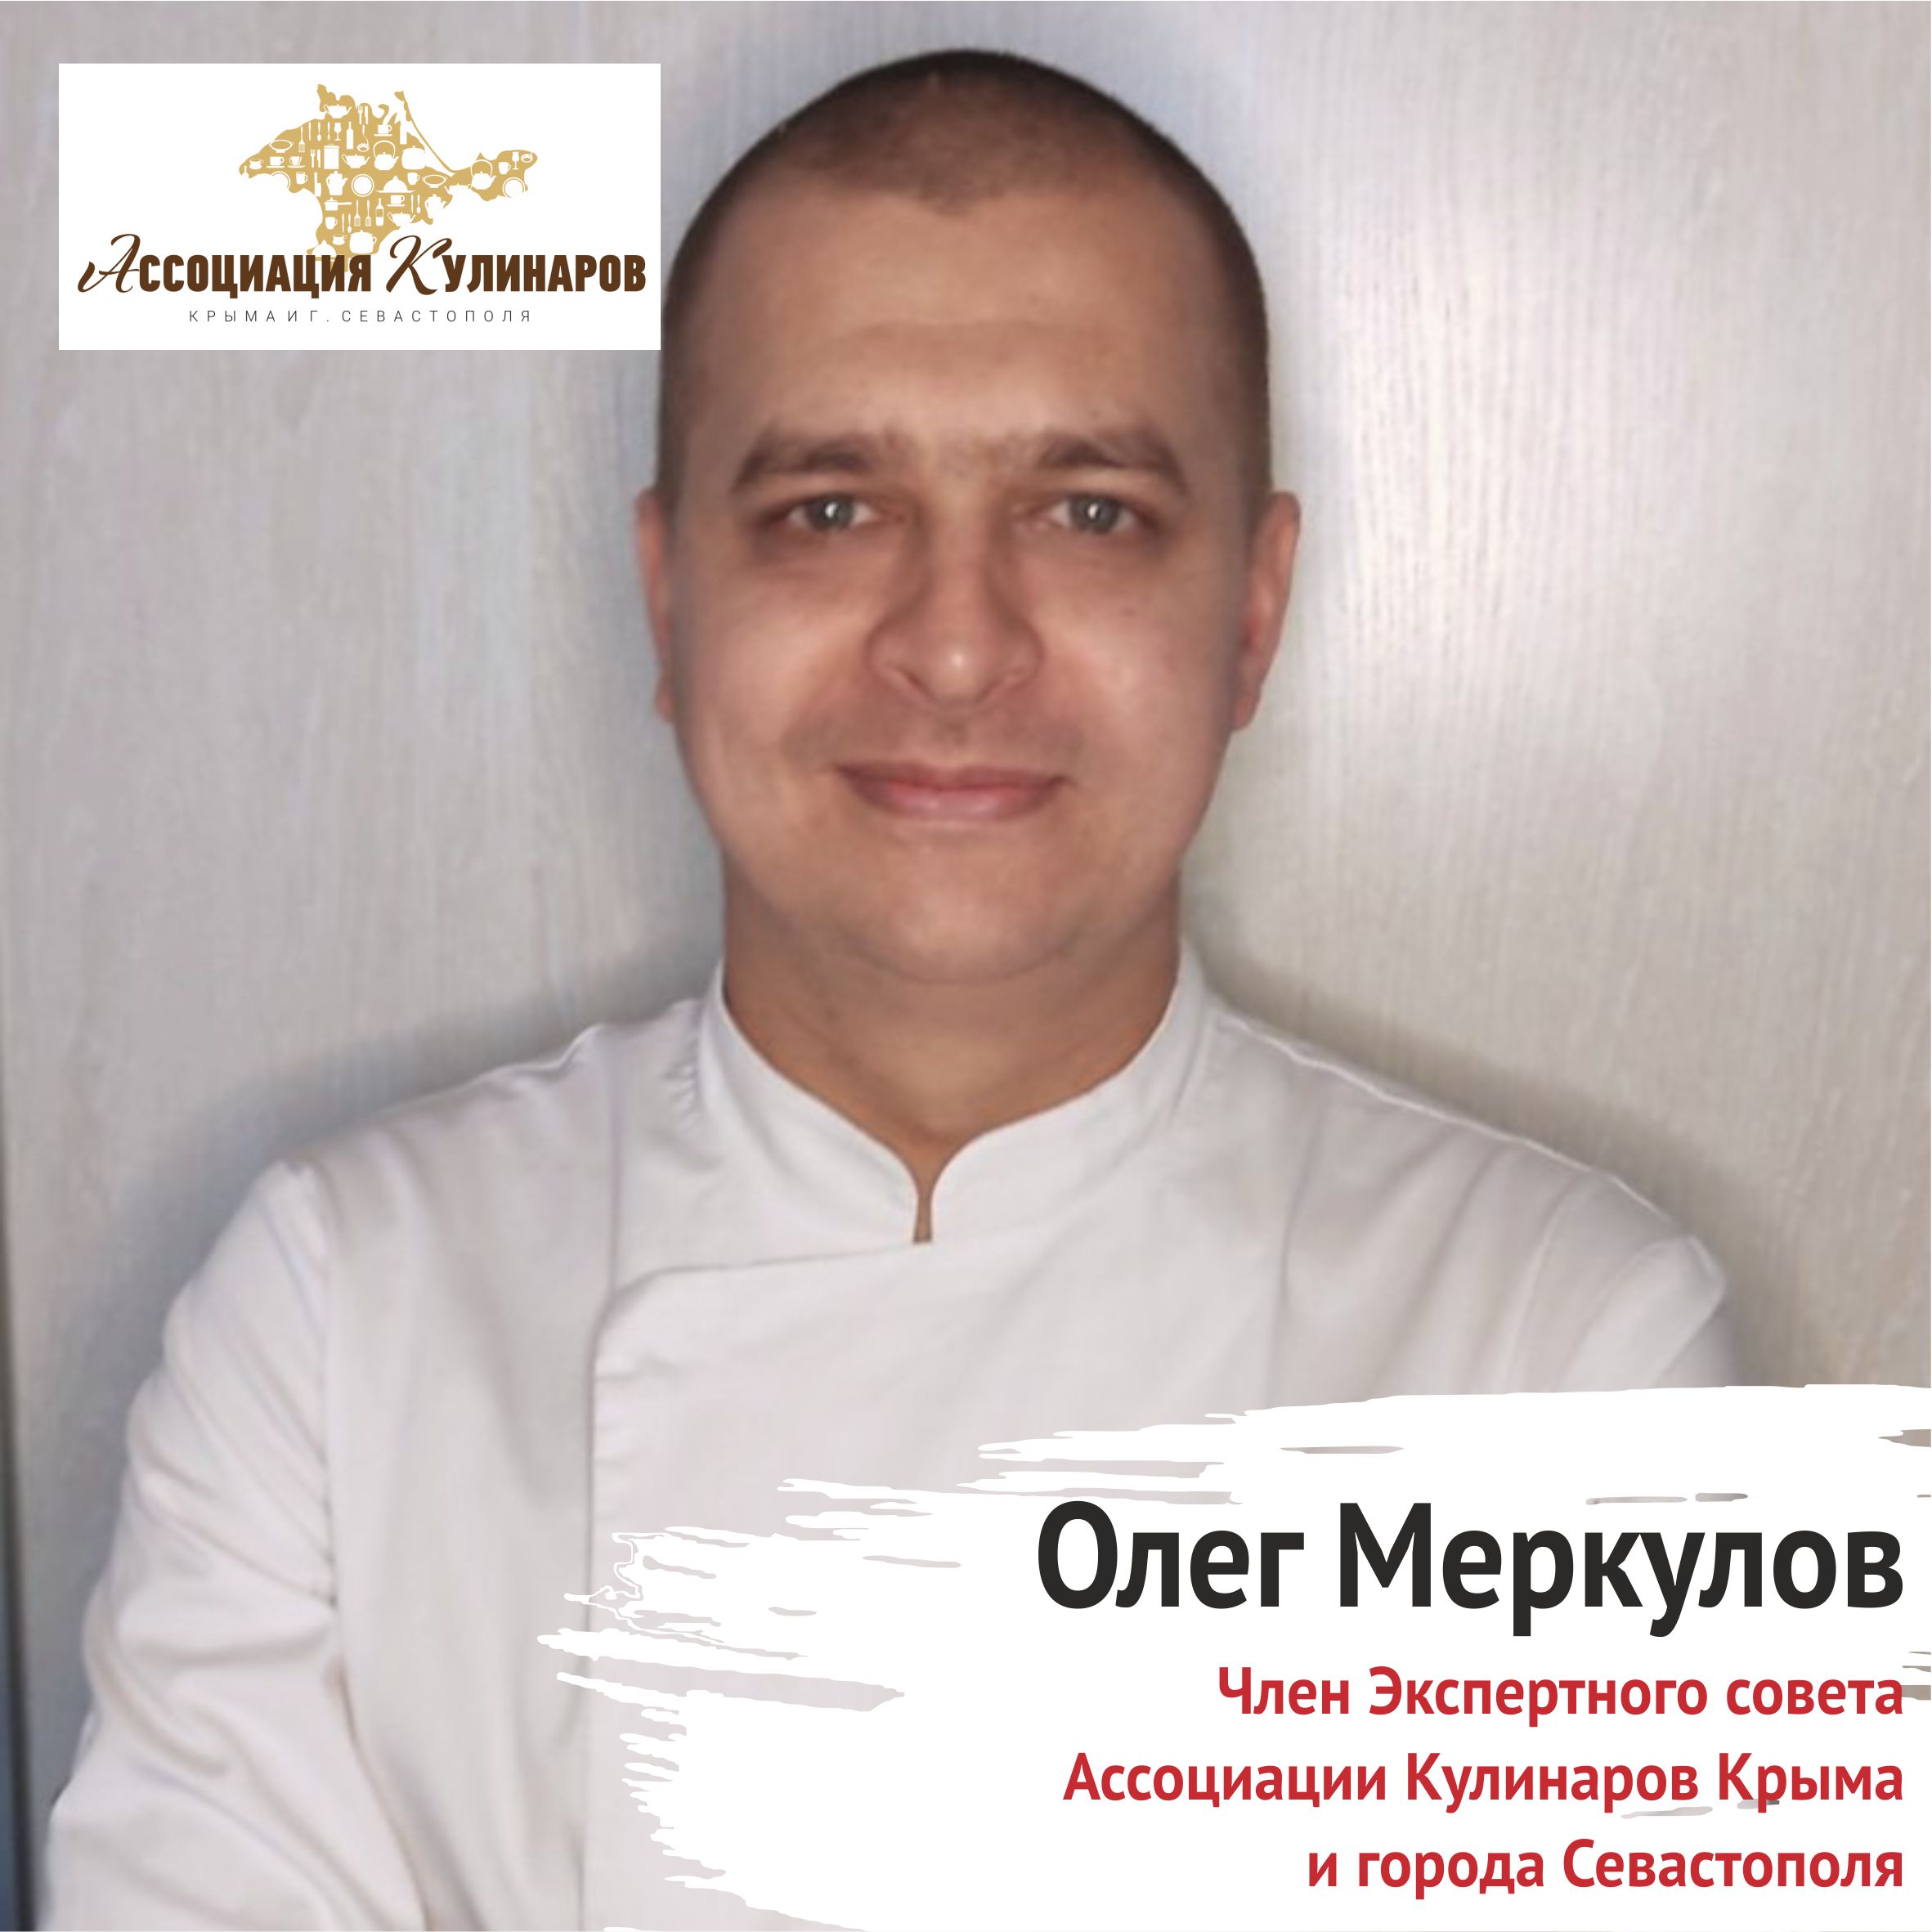 Меркулов Олег Евгеньевич